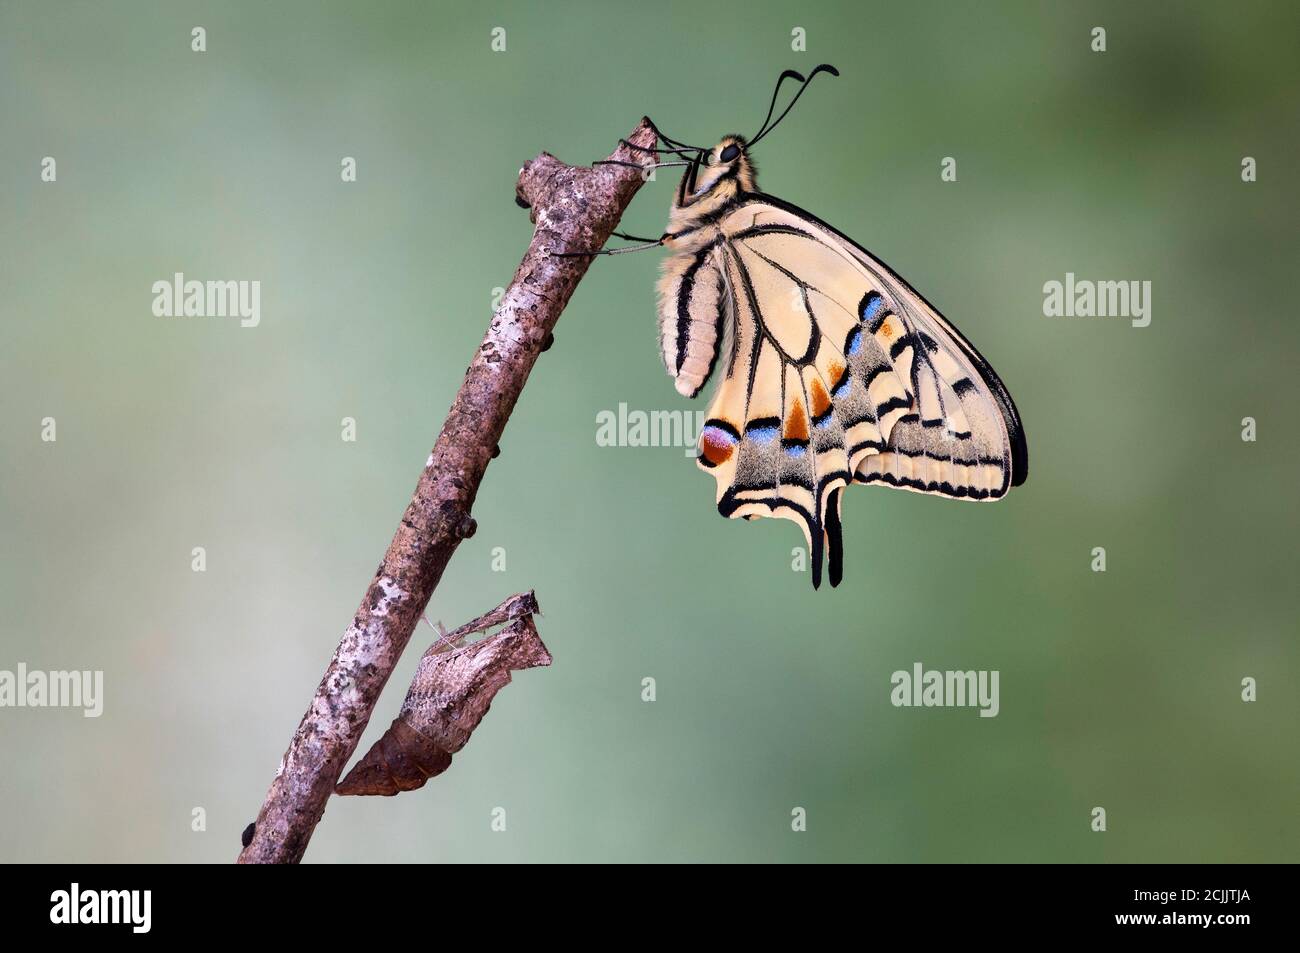 Coda di rondine del Vecchio mondo appena schiusa (Papilio machaon) sopra la sua conchiglia pupa vuota, la Svizzera Foto Stock